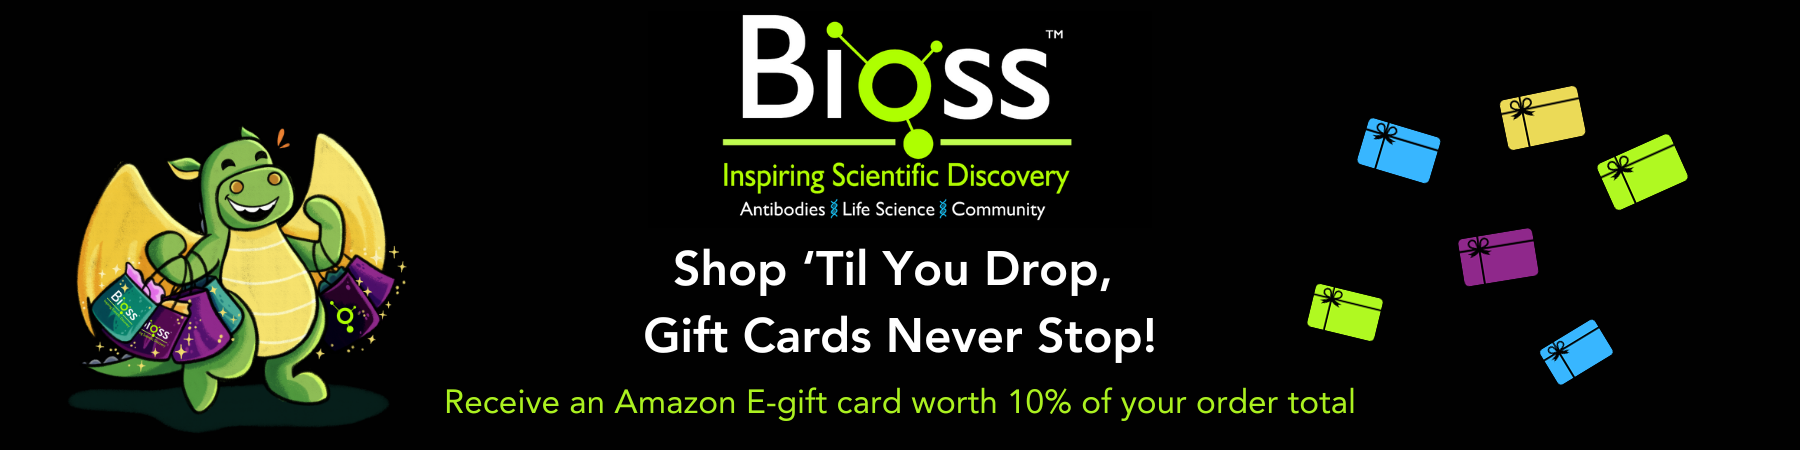 Shop ‘Til You Drop, Gift Cards Never Stop Banner!